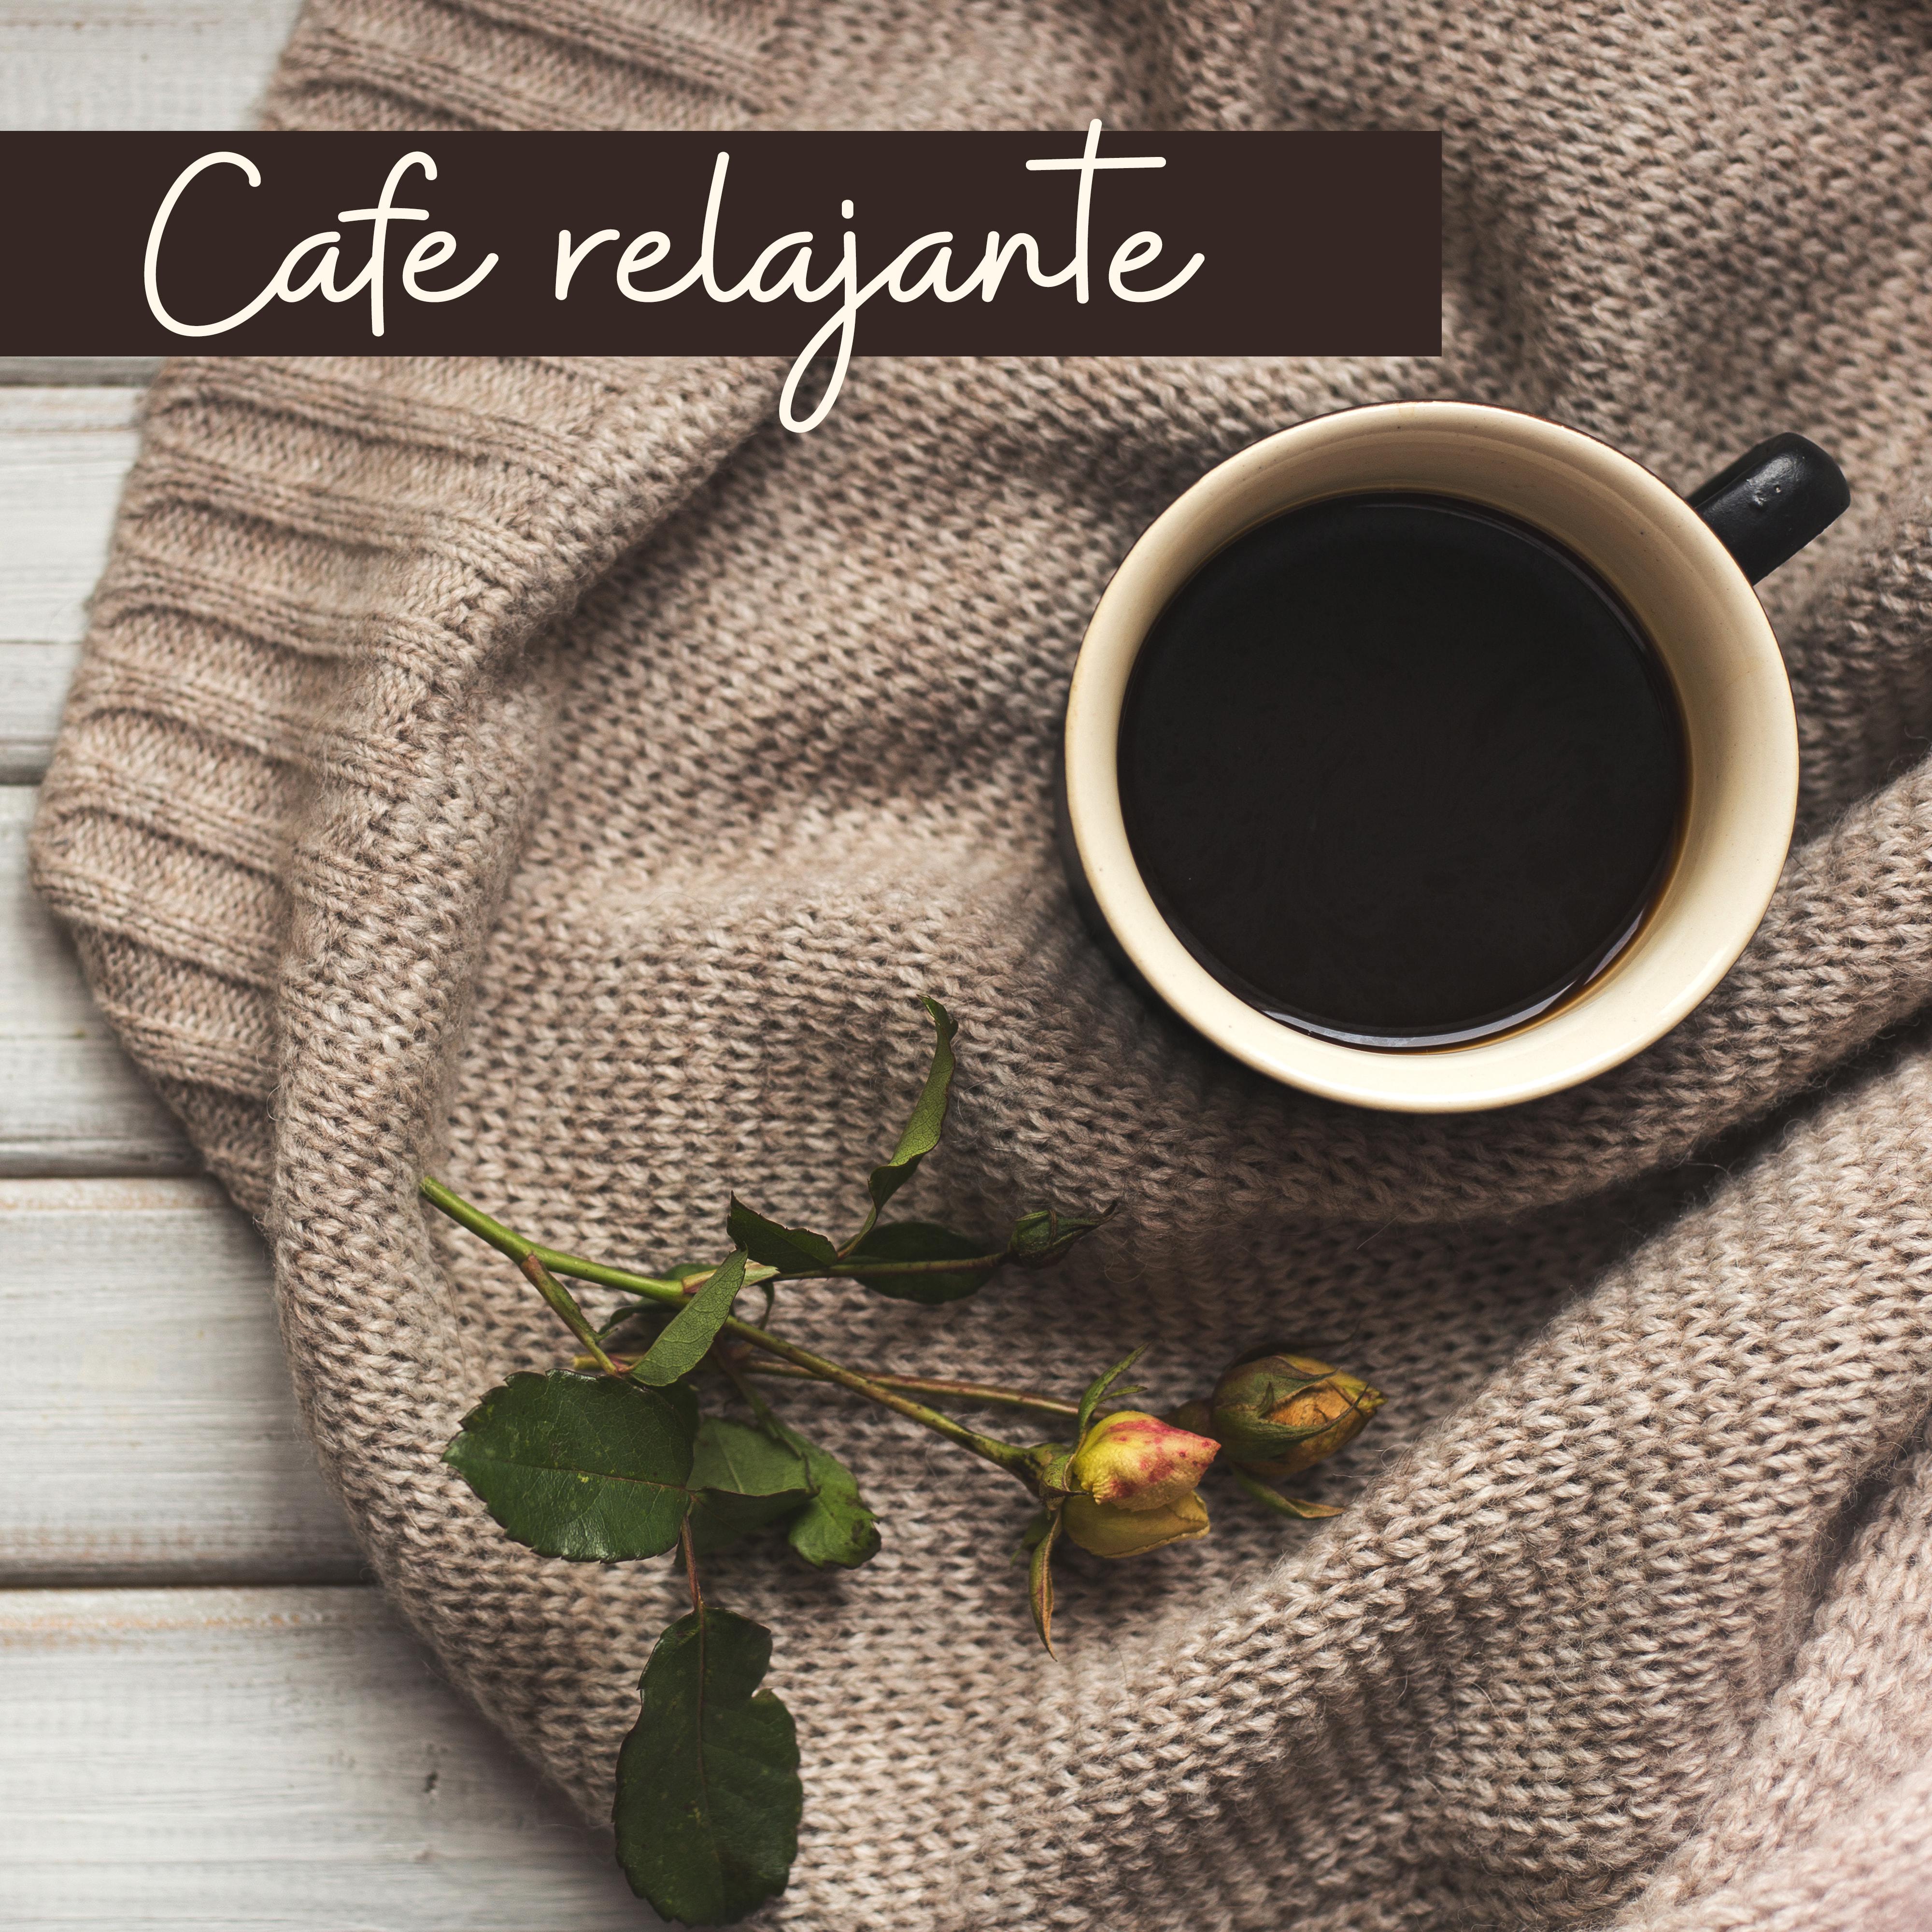 Cafe relajante